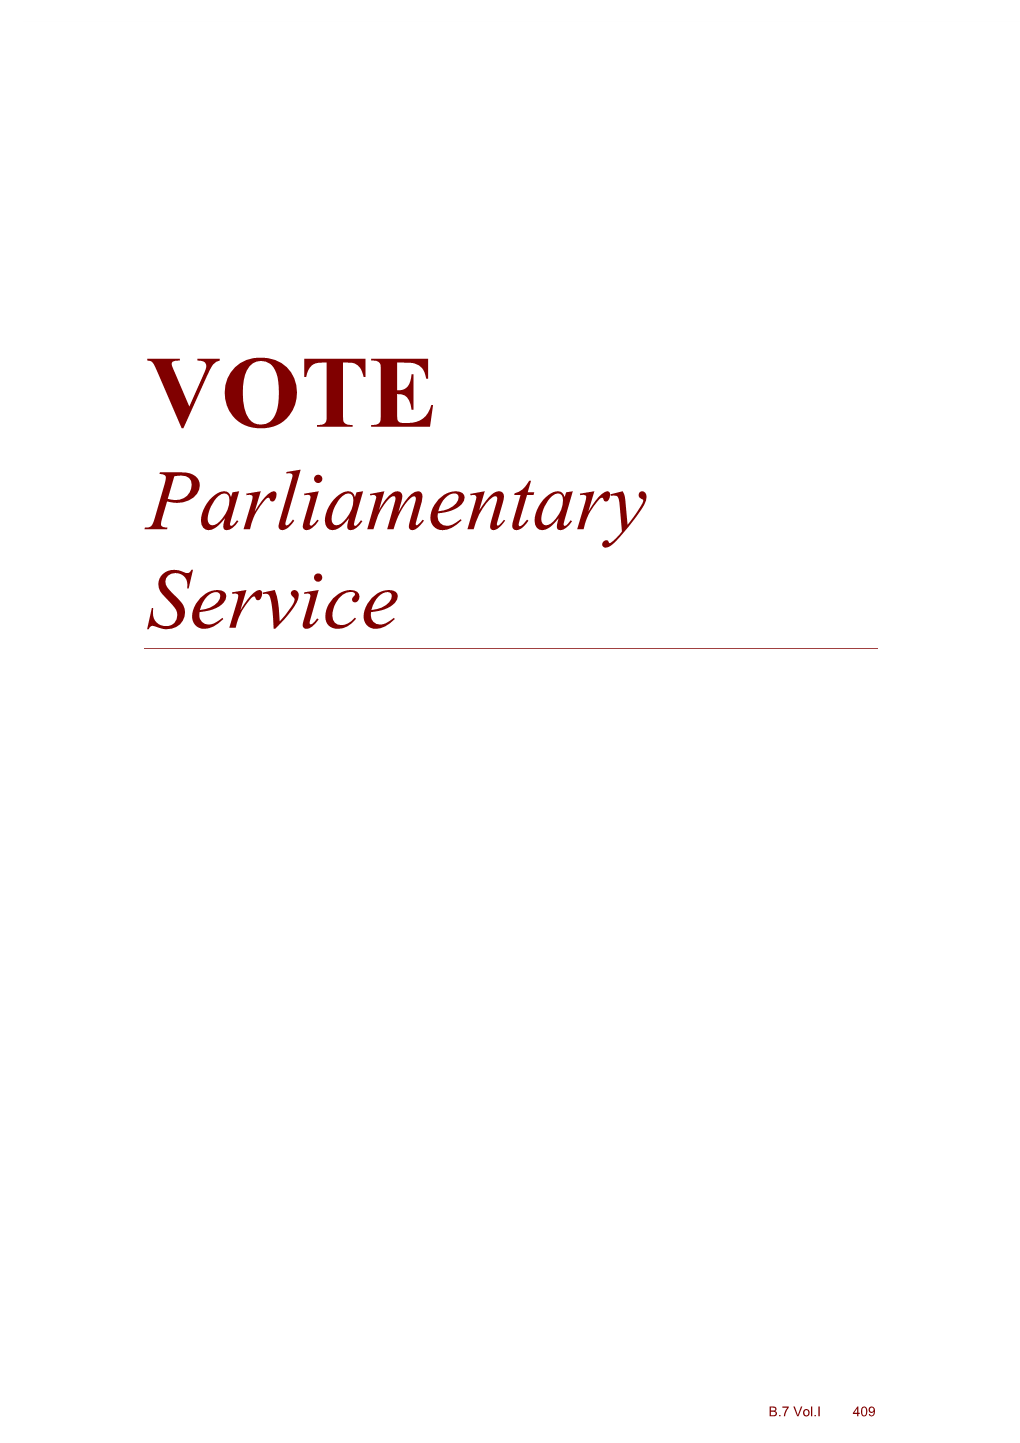 VOTE Parliamentary Service